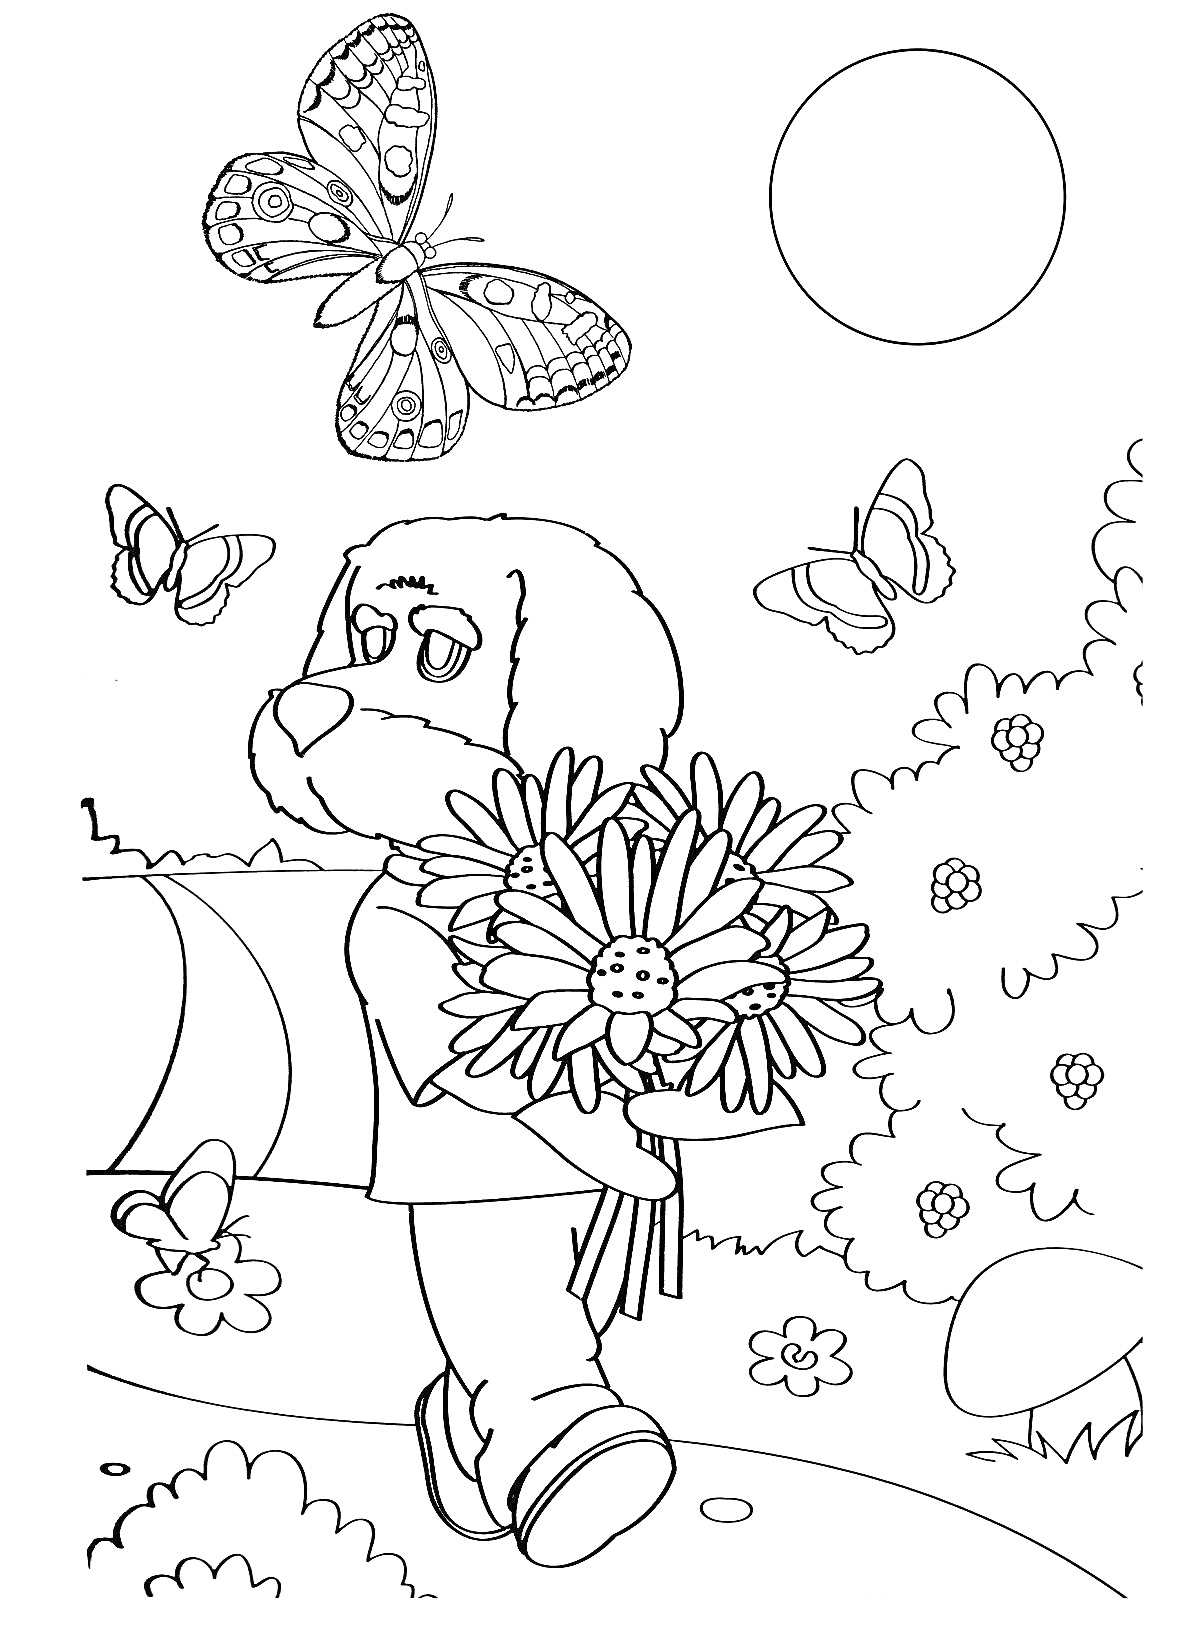 Раскраска Пес с букетом цветов гуляет на природе — бабочки, дорога, деревья, трава, кусты, цветы, солнце